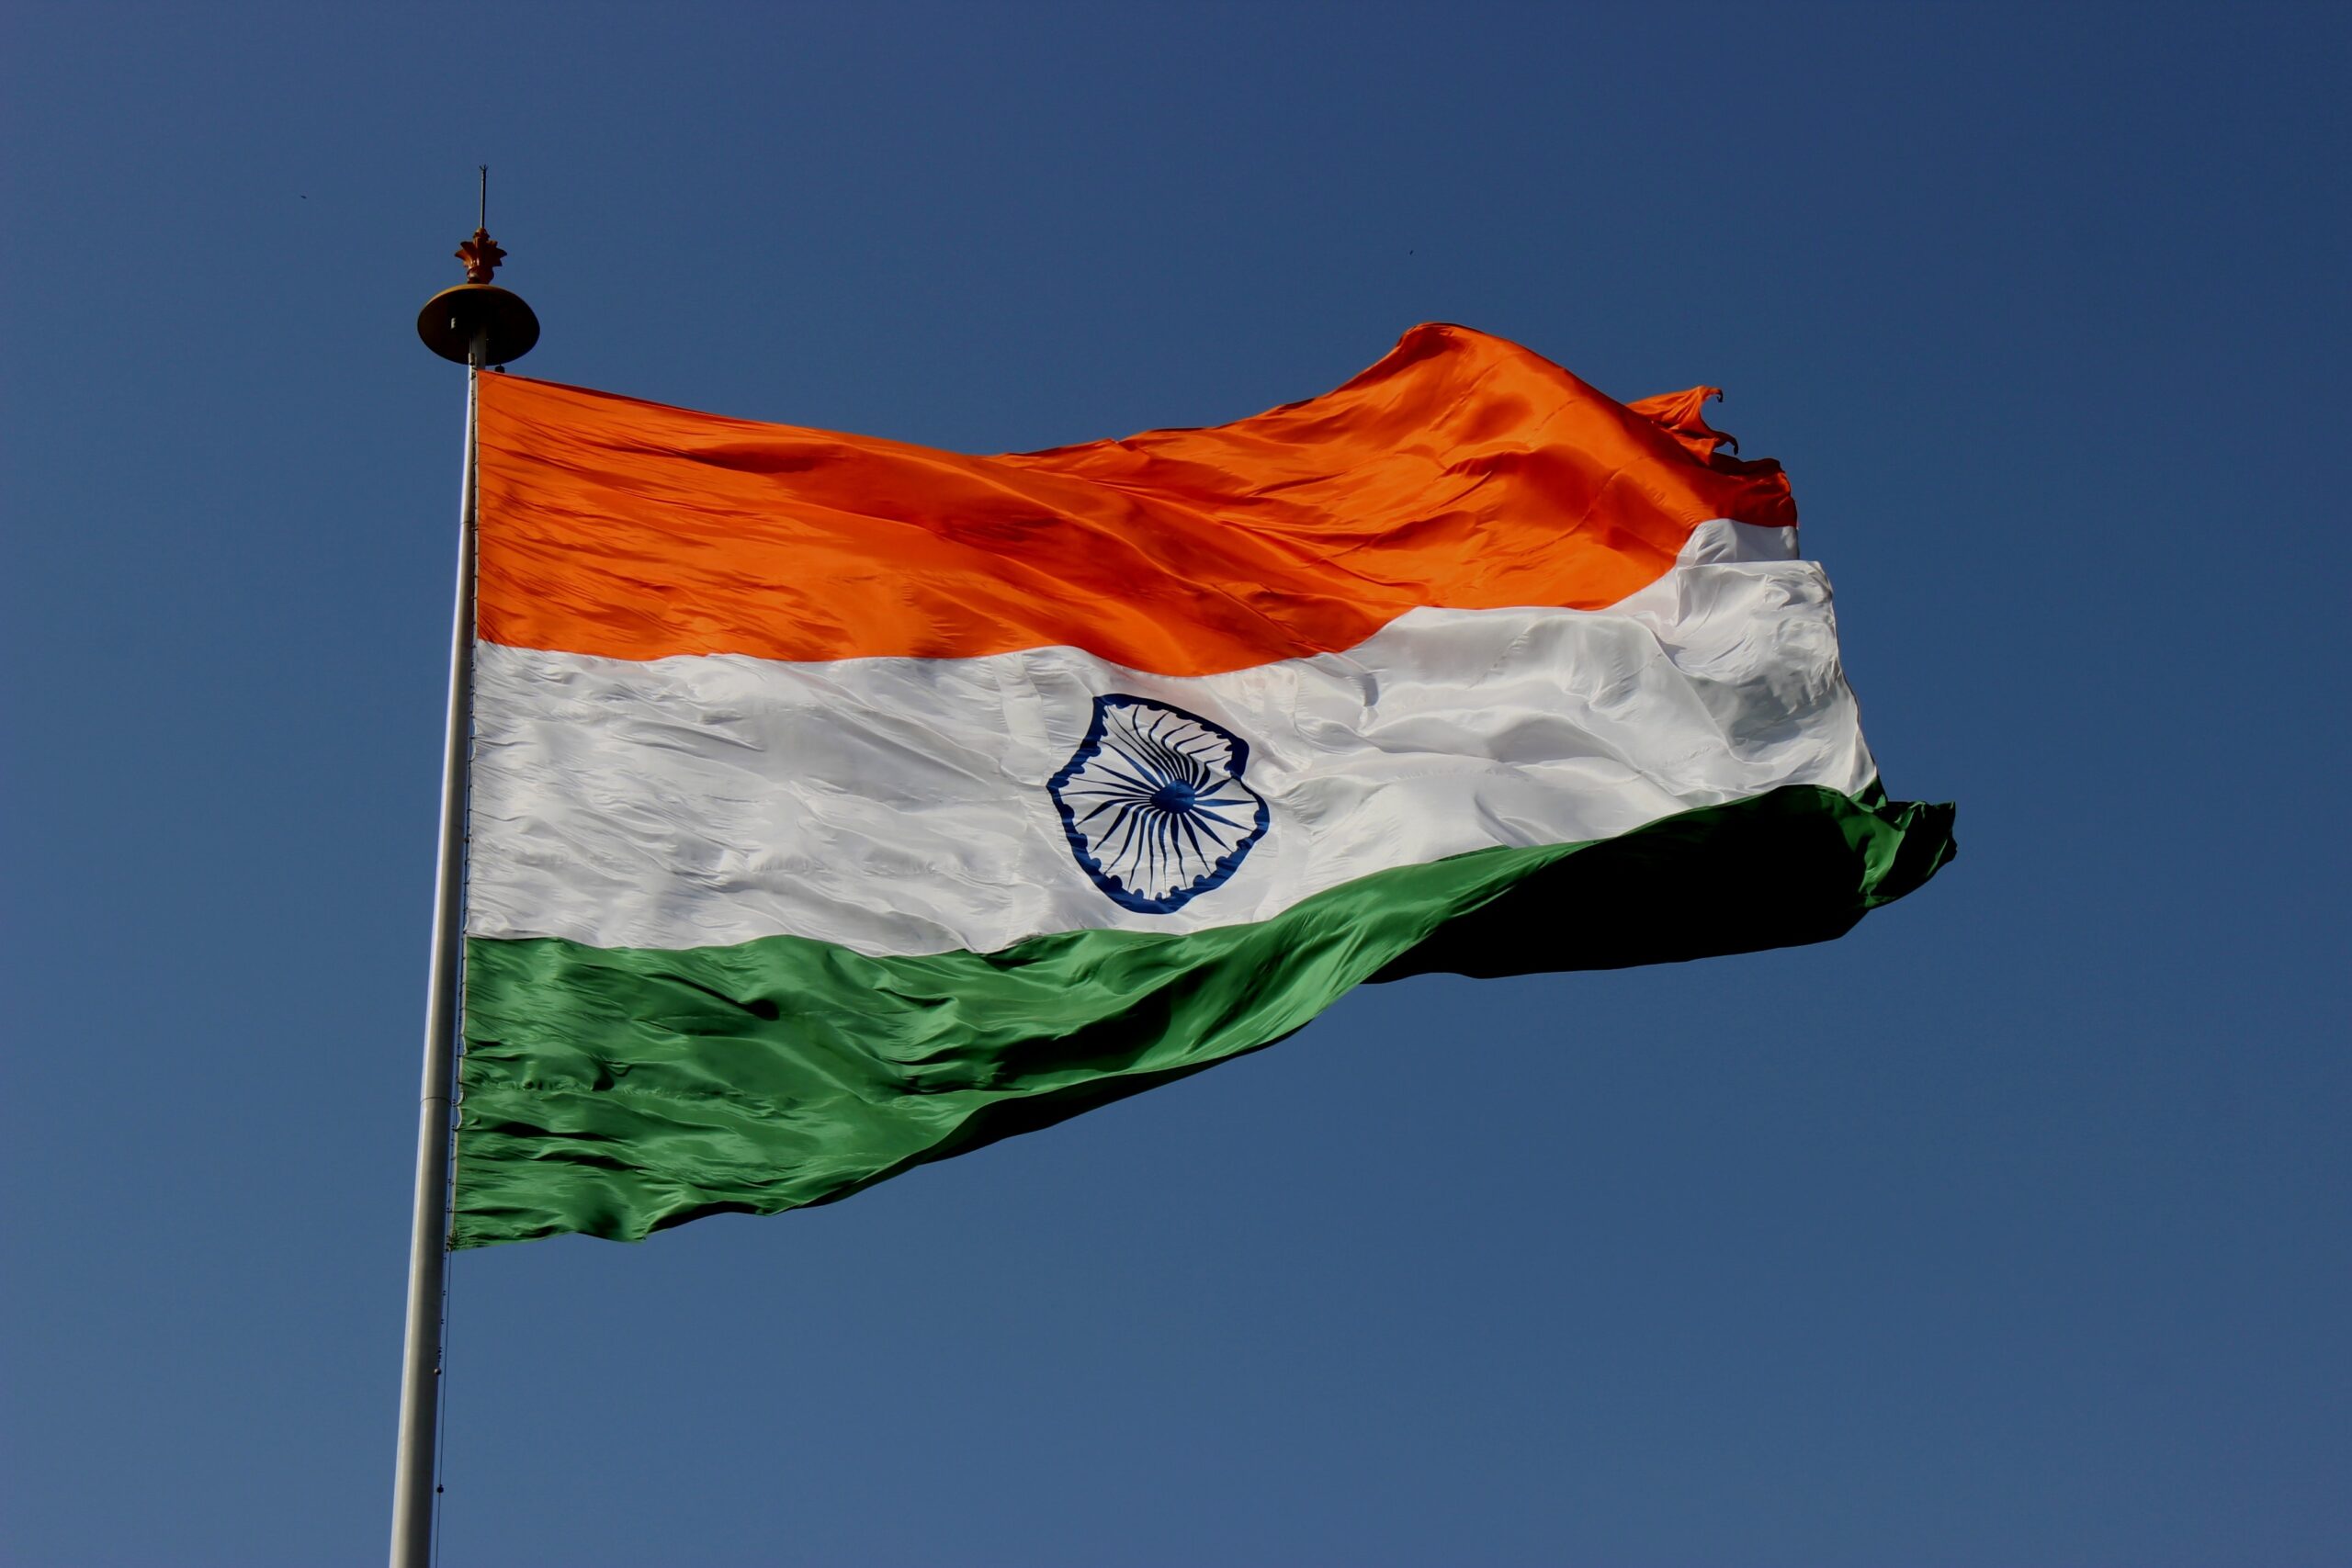 Índia pode adotar “Bharat” como único nome oficial do país